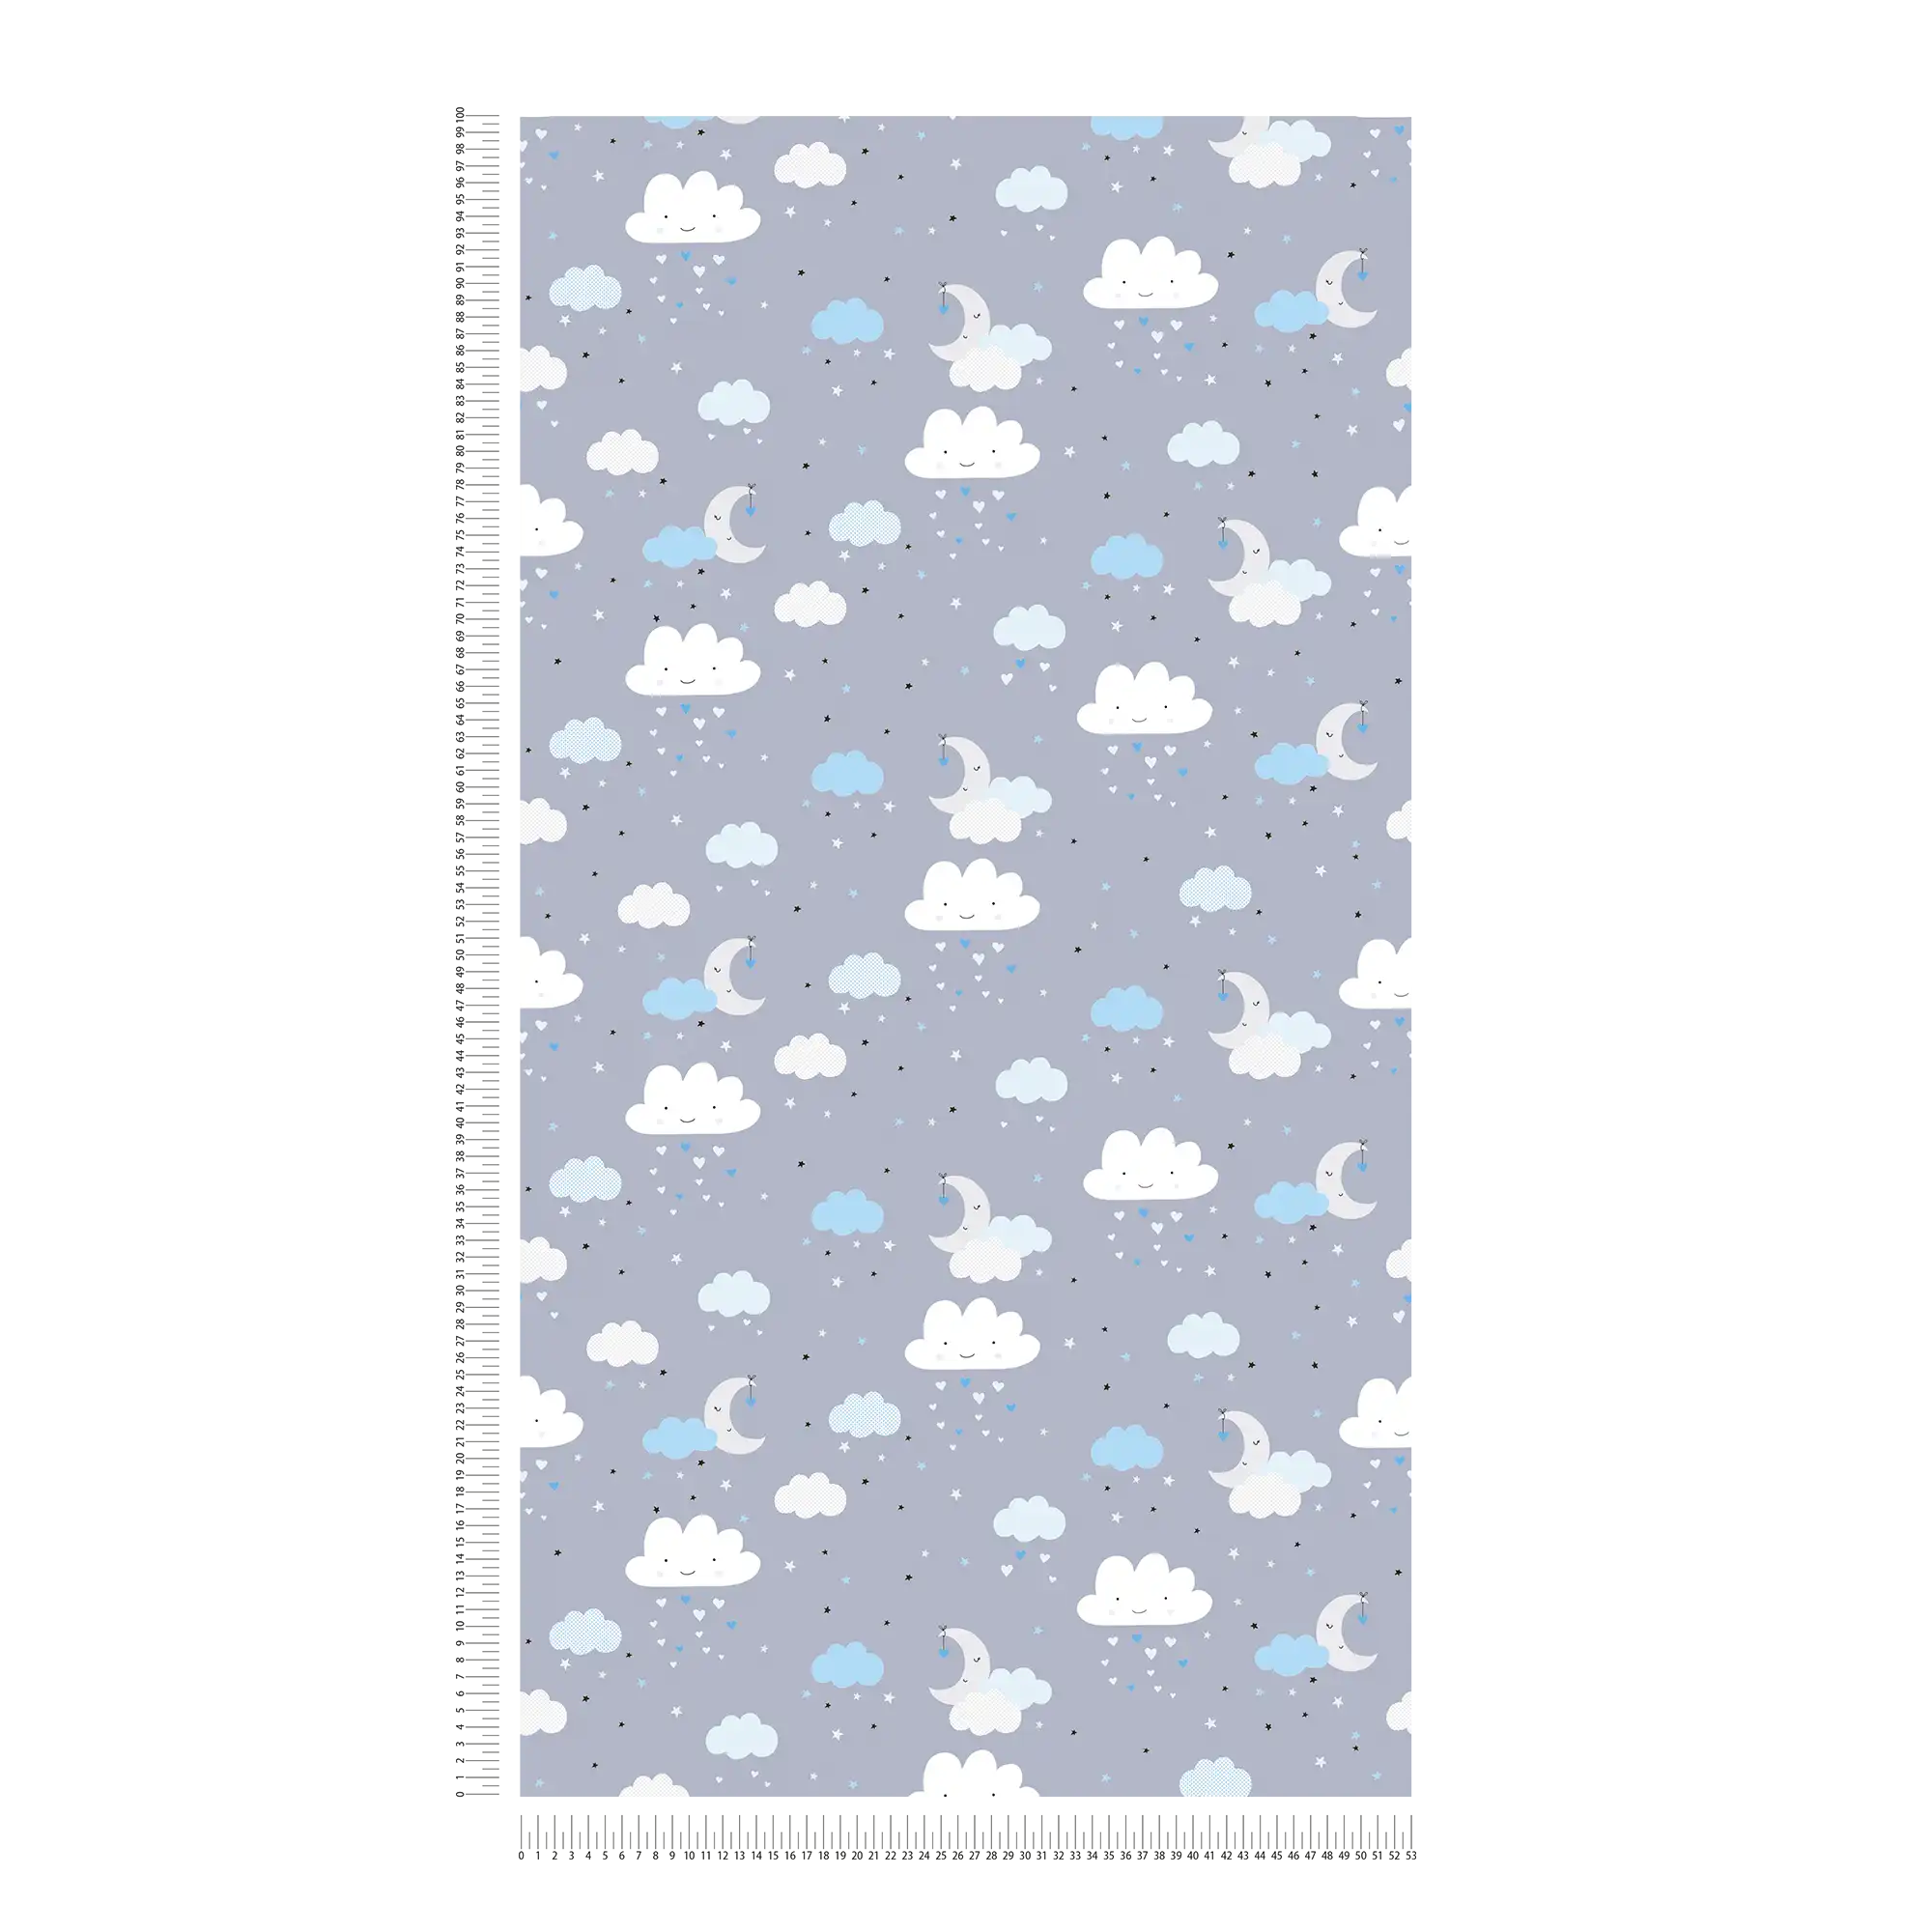             Tapete Kinderzimmer Junge Nachthimmel Wolken – Blau, Grau, Weiß
        